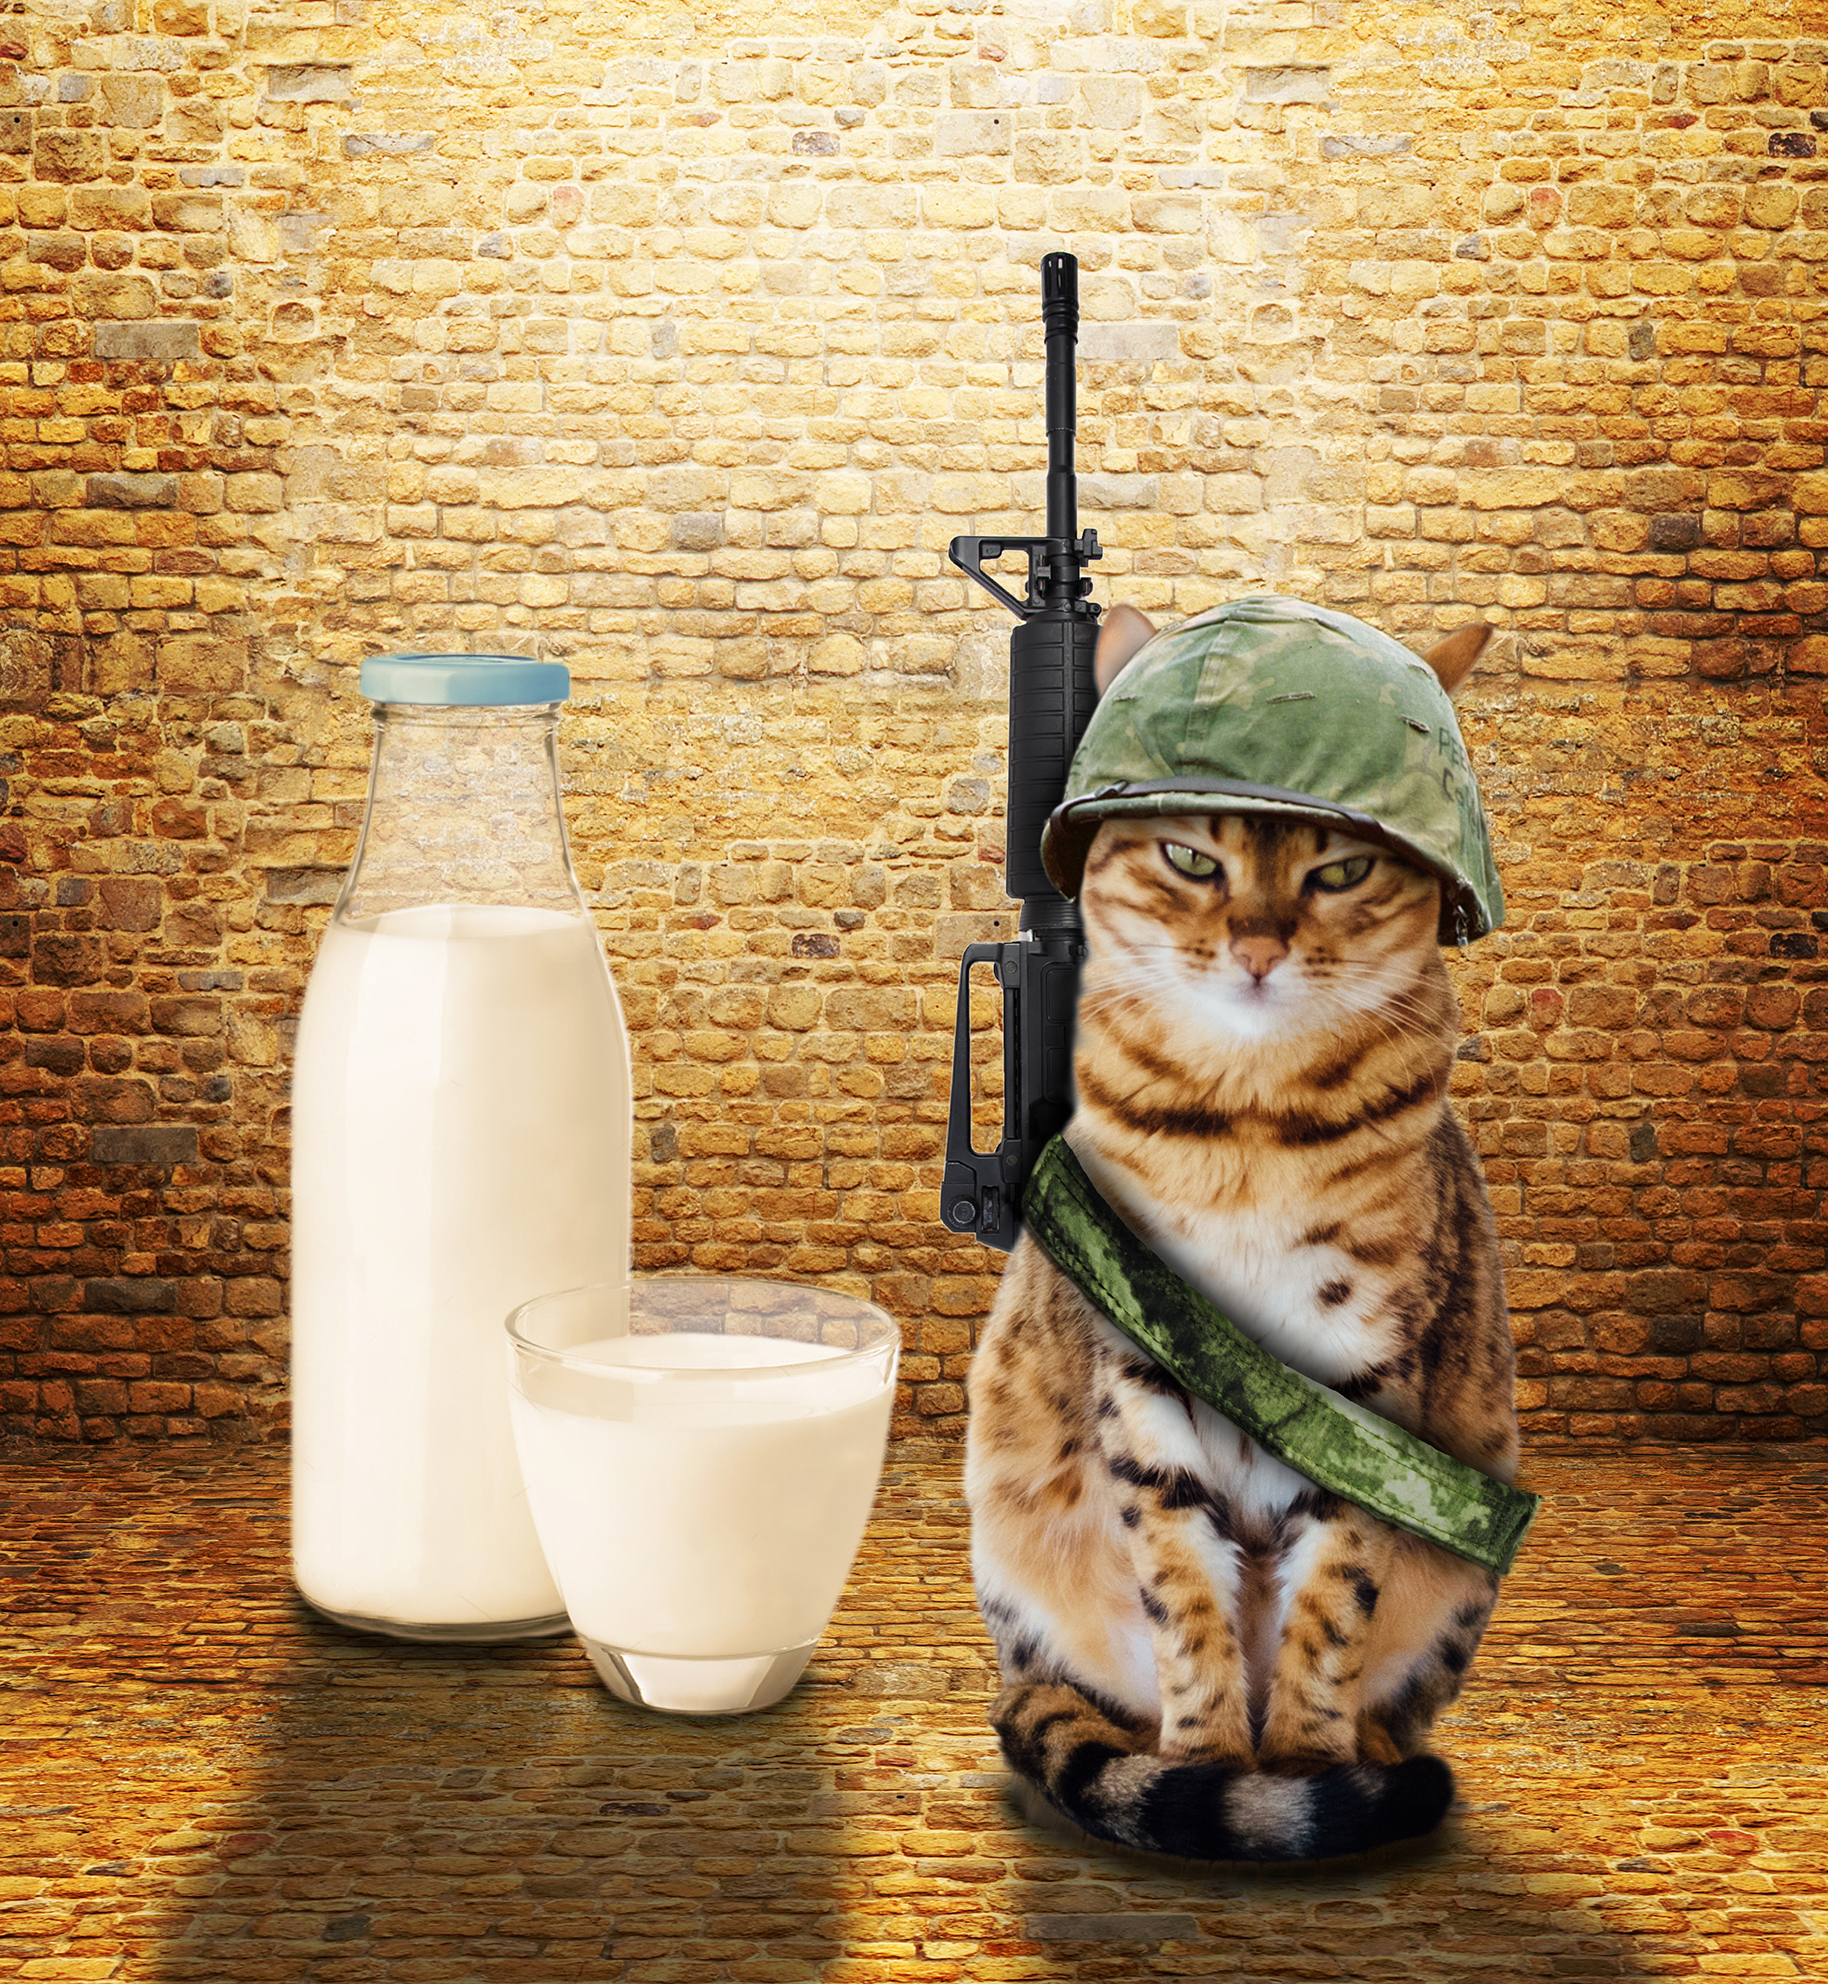 חתול שומר על החלב